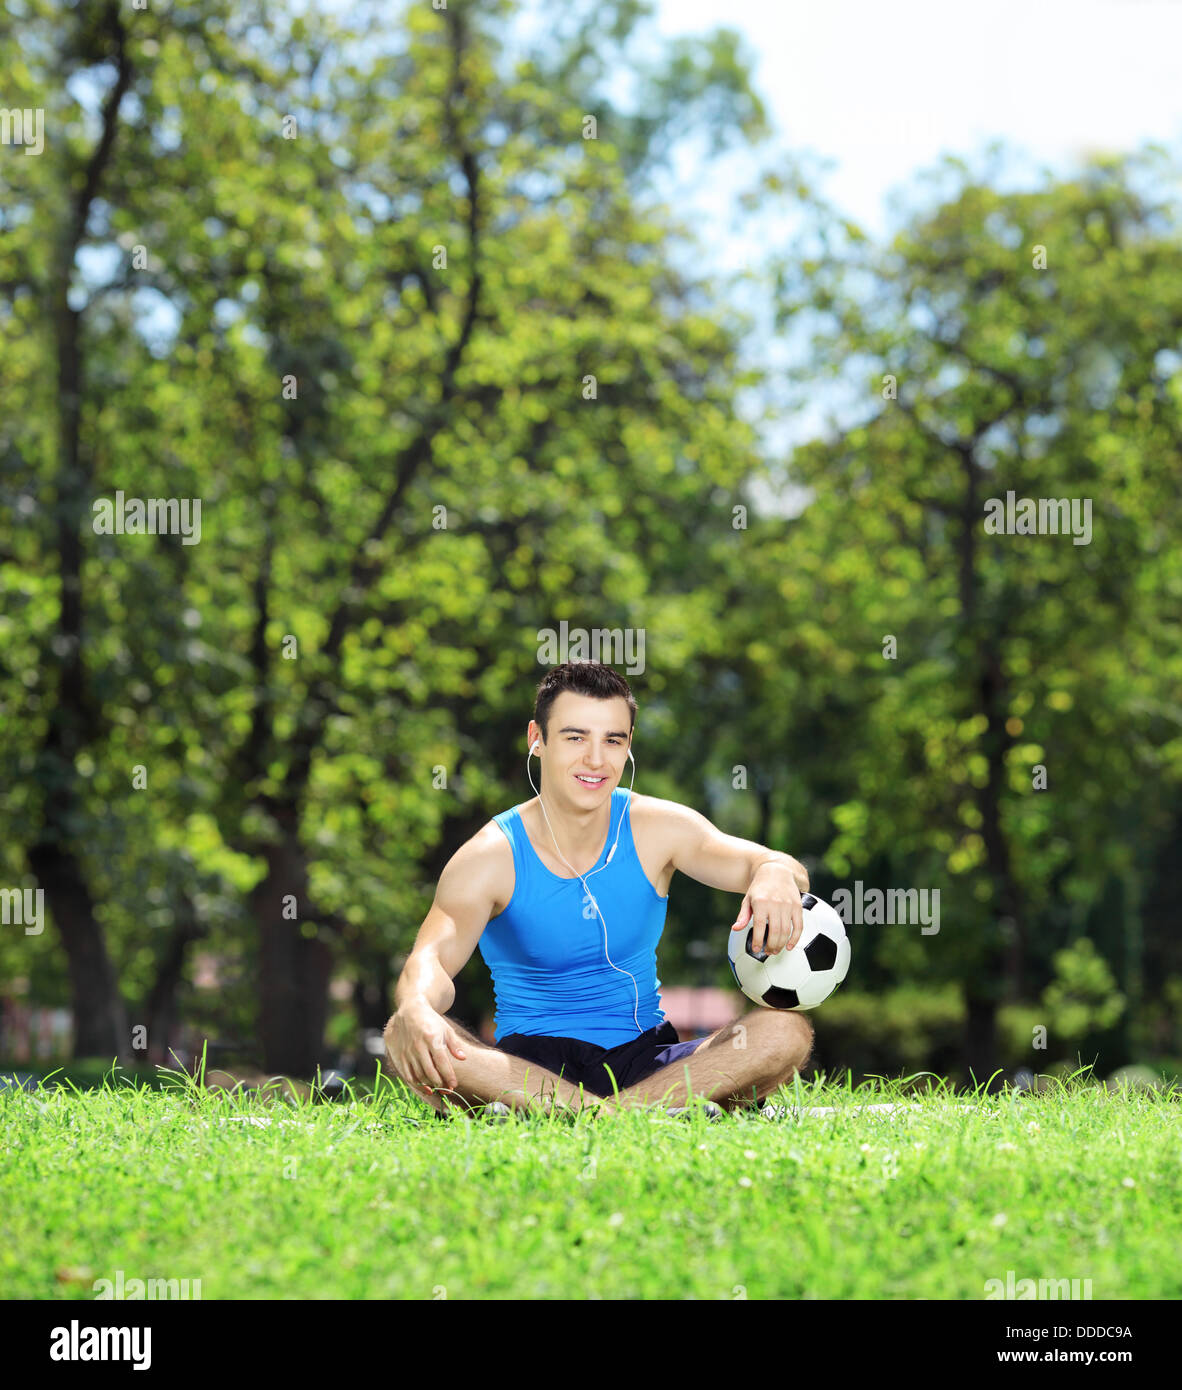 Jeune athlète masculin souriant assis sur l'herbe verte avec un ballon de soccer dans un parc Banque D'Images